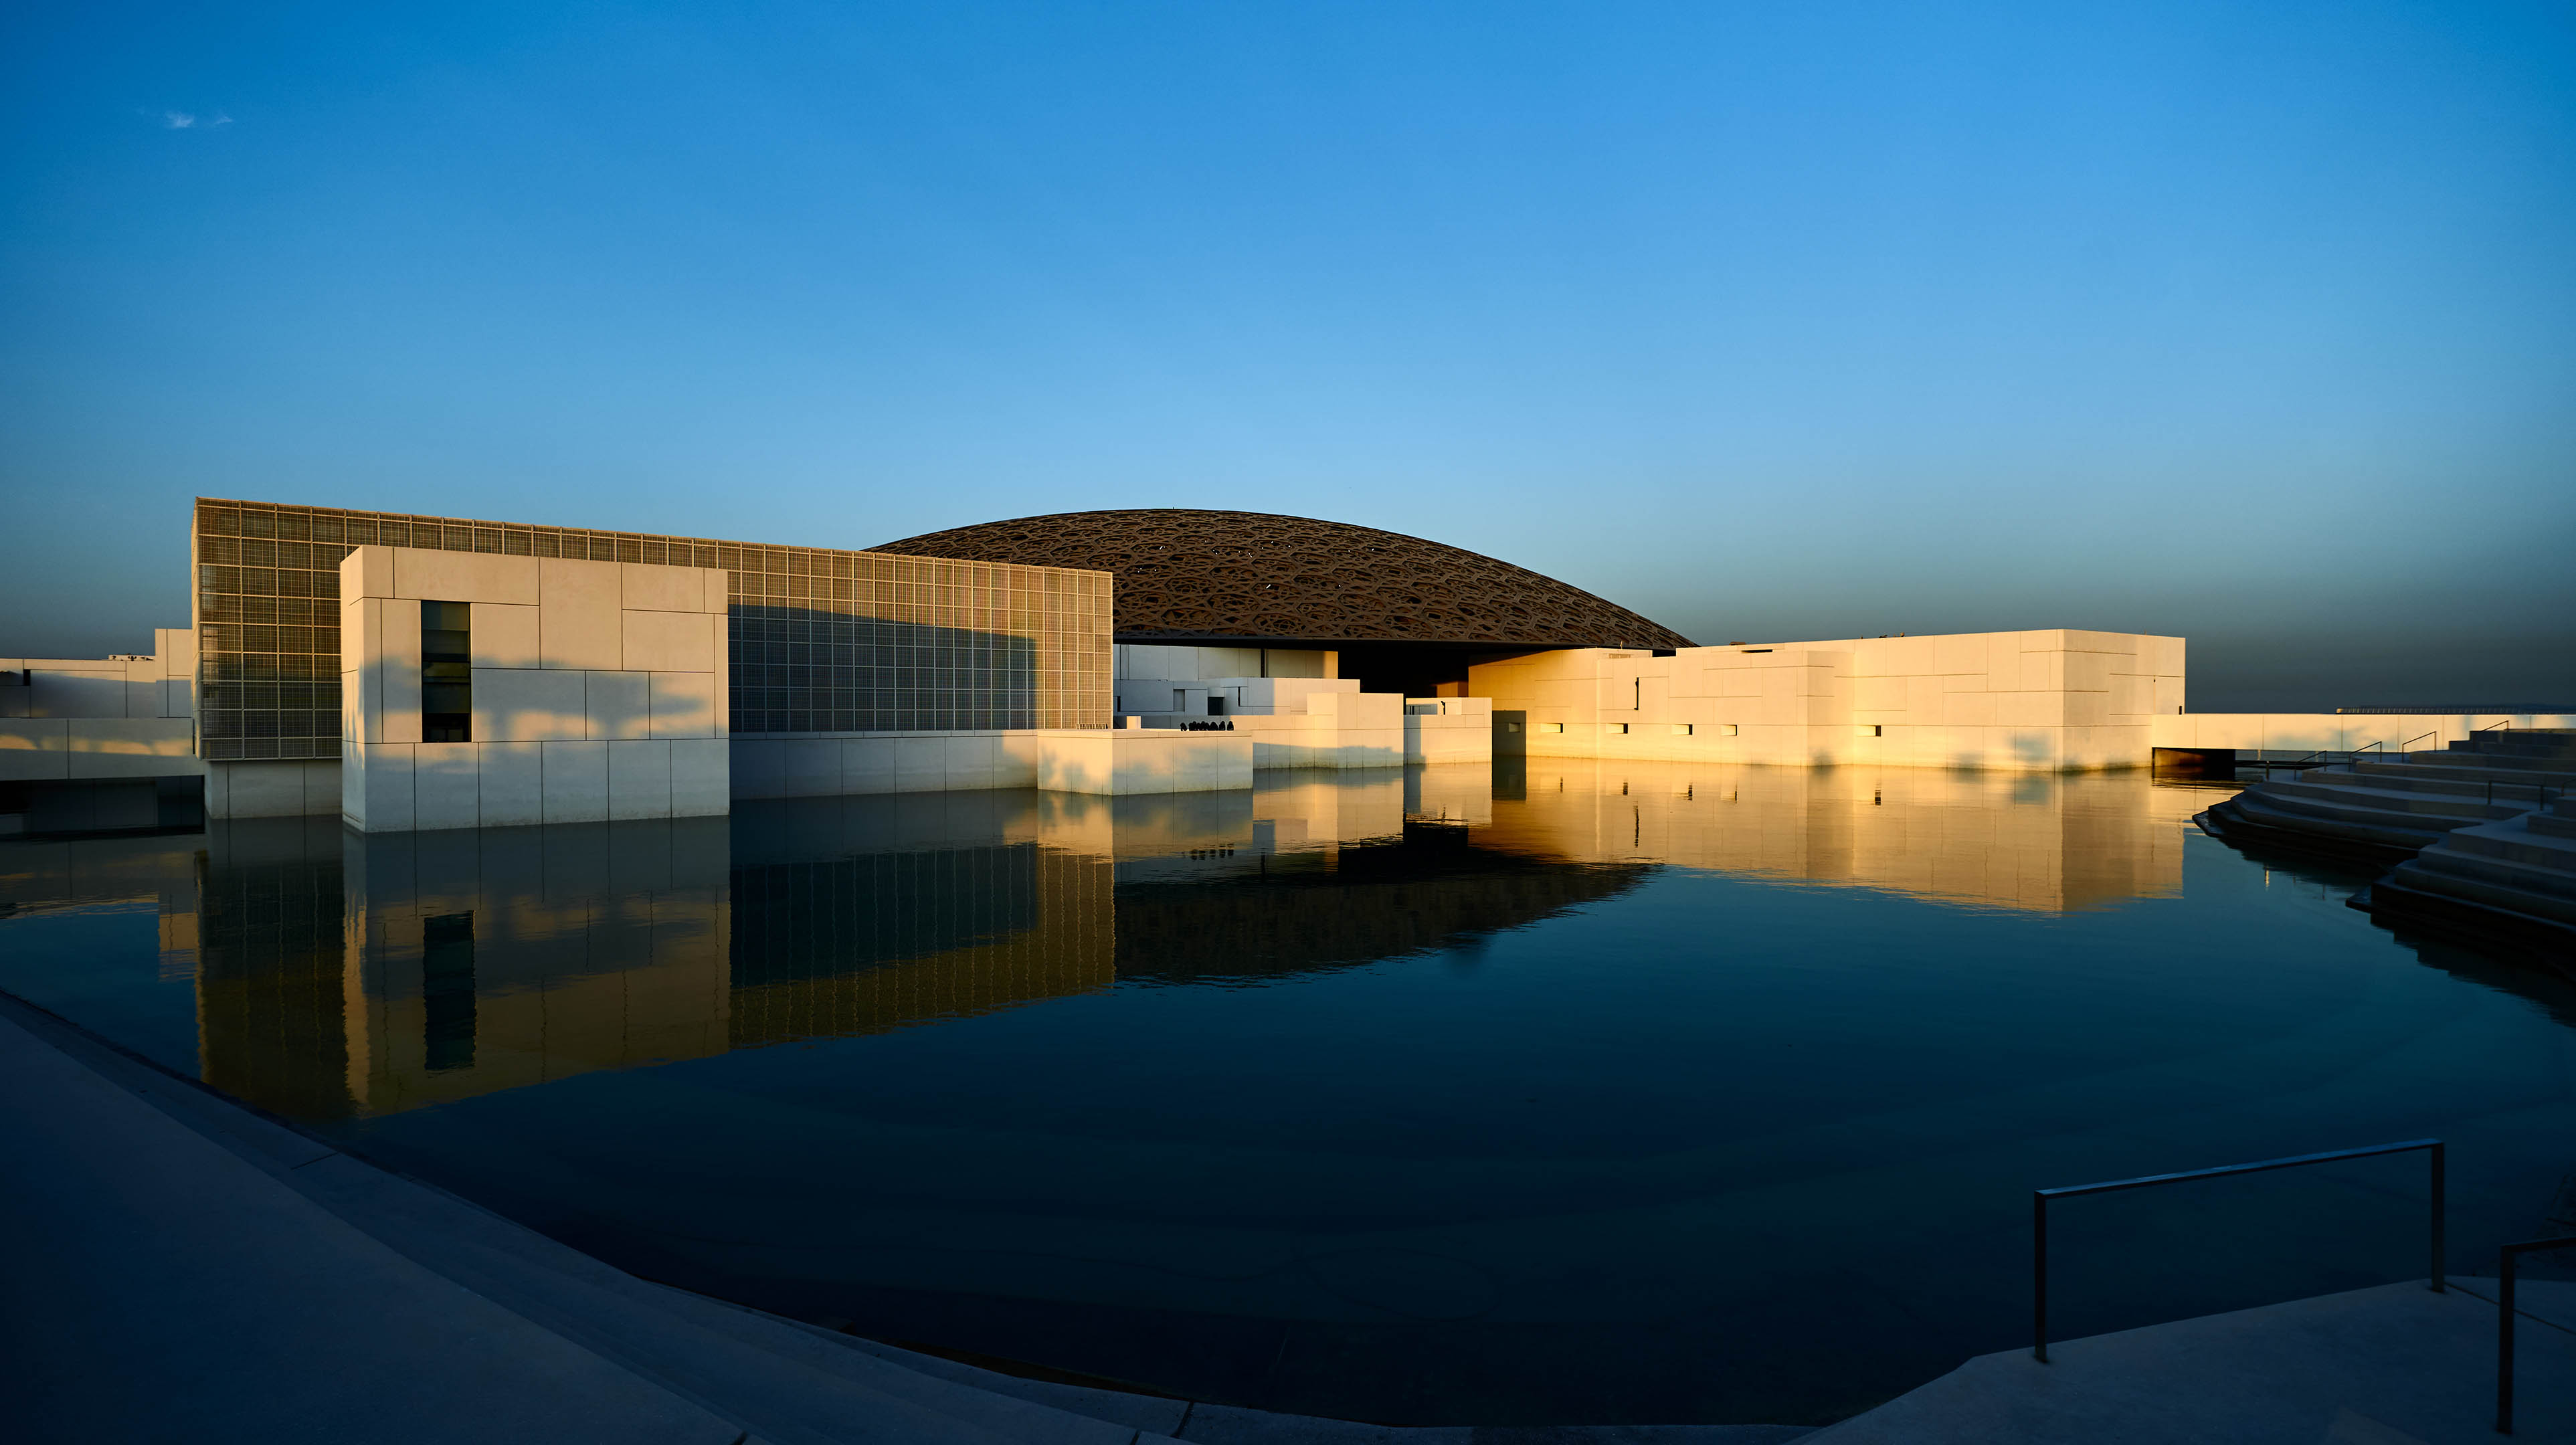 لقطة من الأعلى لمتحف اللوفر أبوظبي أثناء النهار